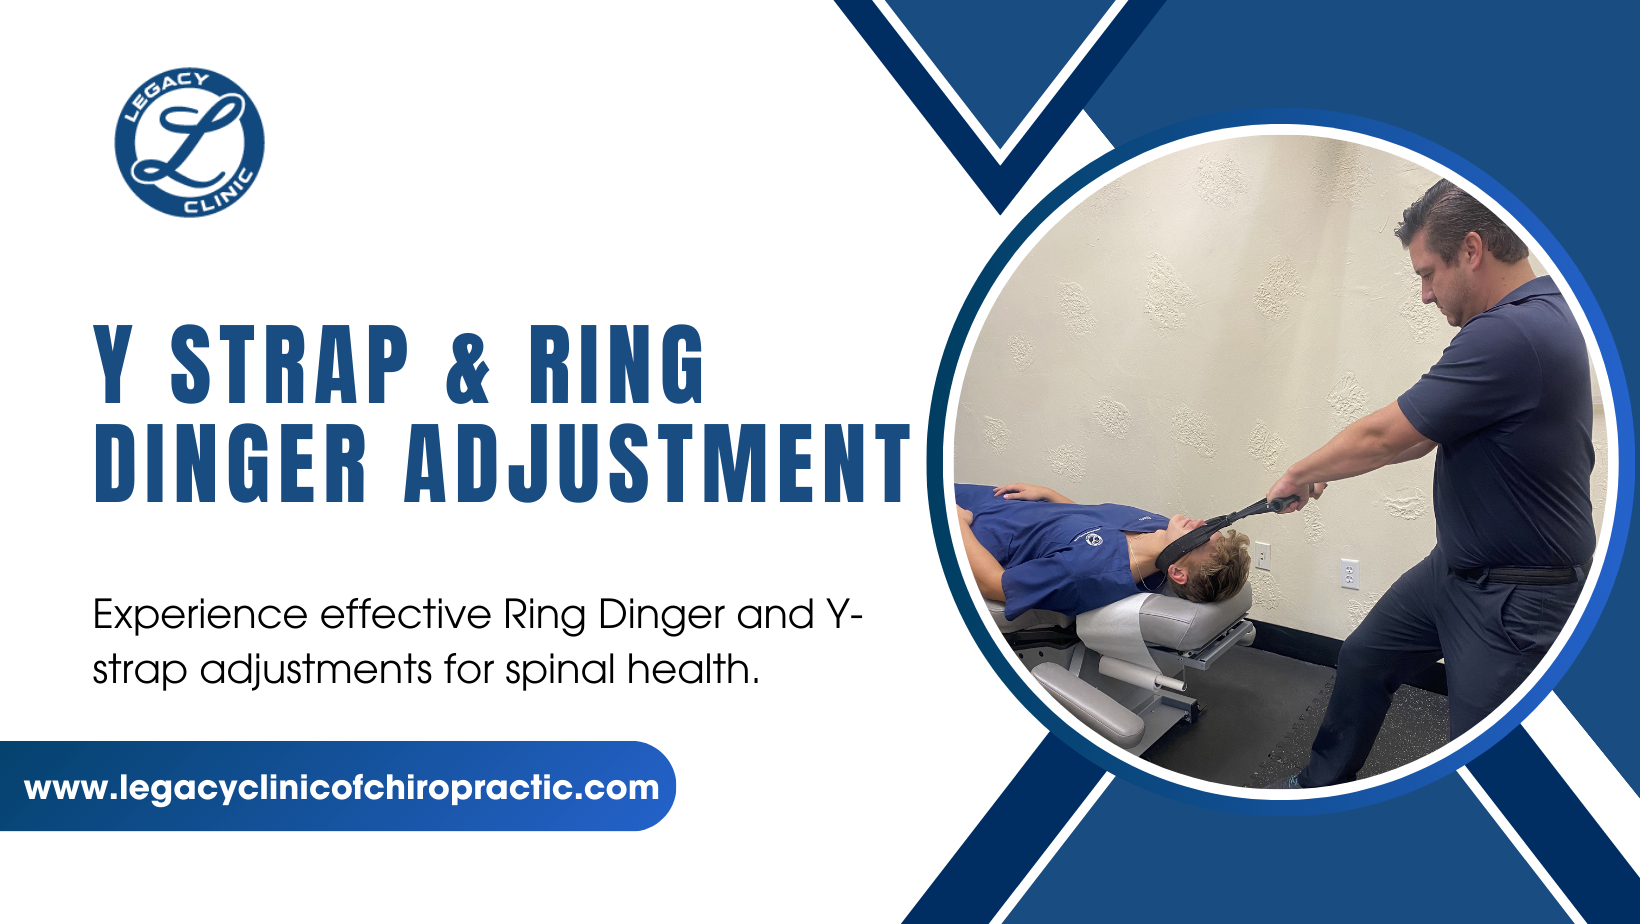 Y Strap & Ring Dinger Adjustment